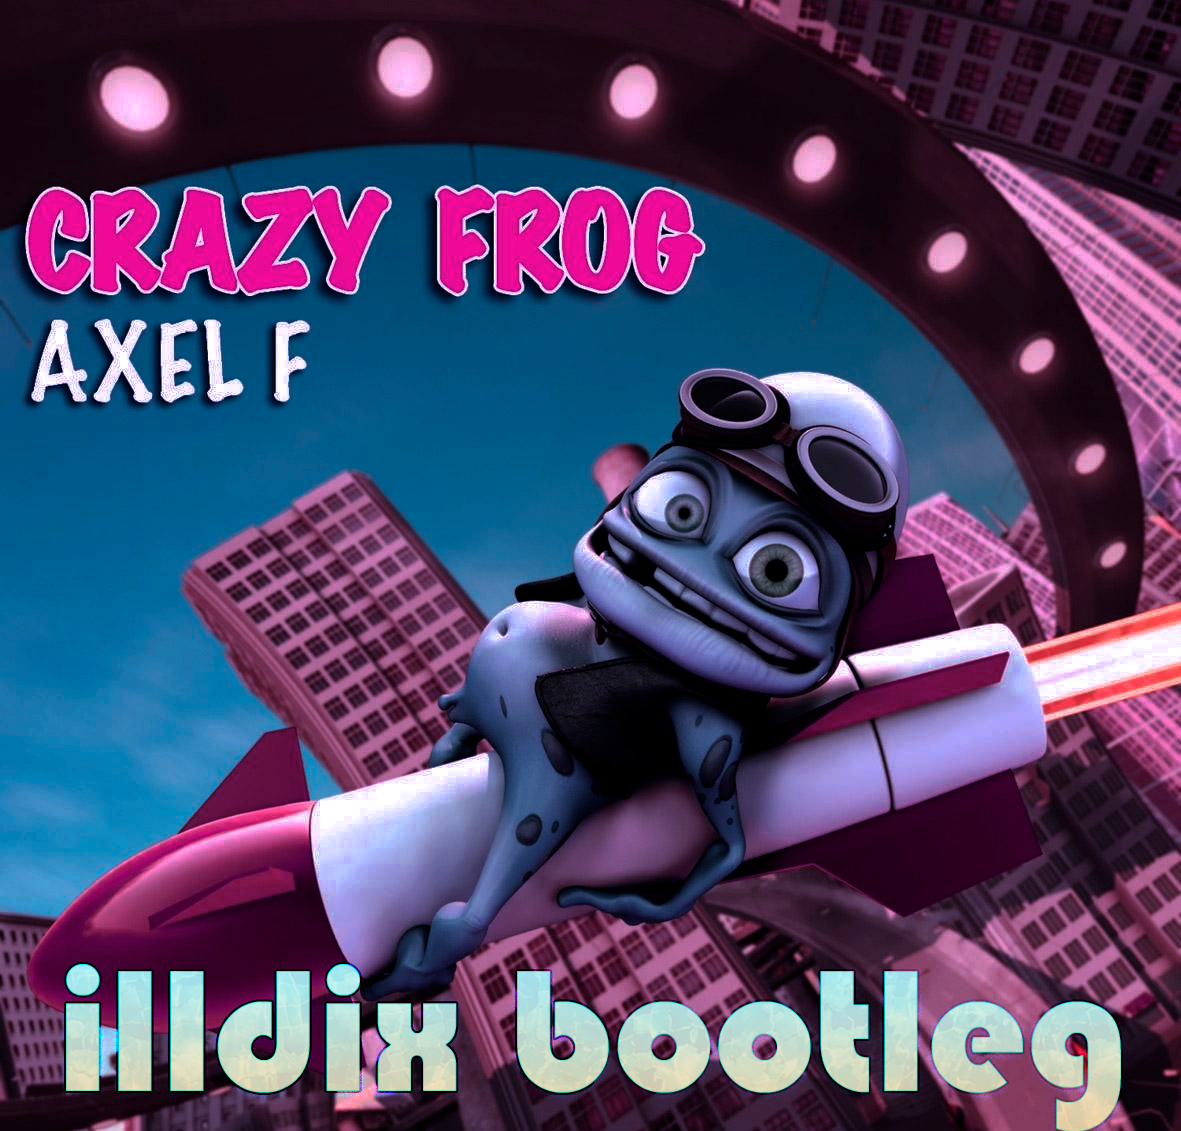 Crazy Frog - Axel F (ILLDIX Boolteg) – ILLDIX